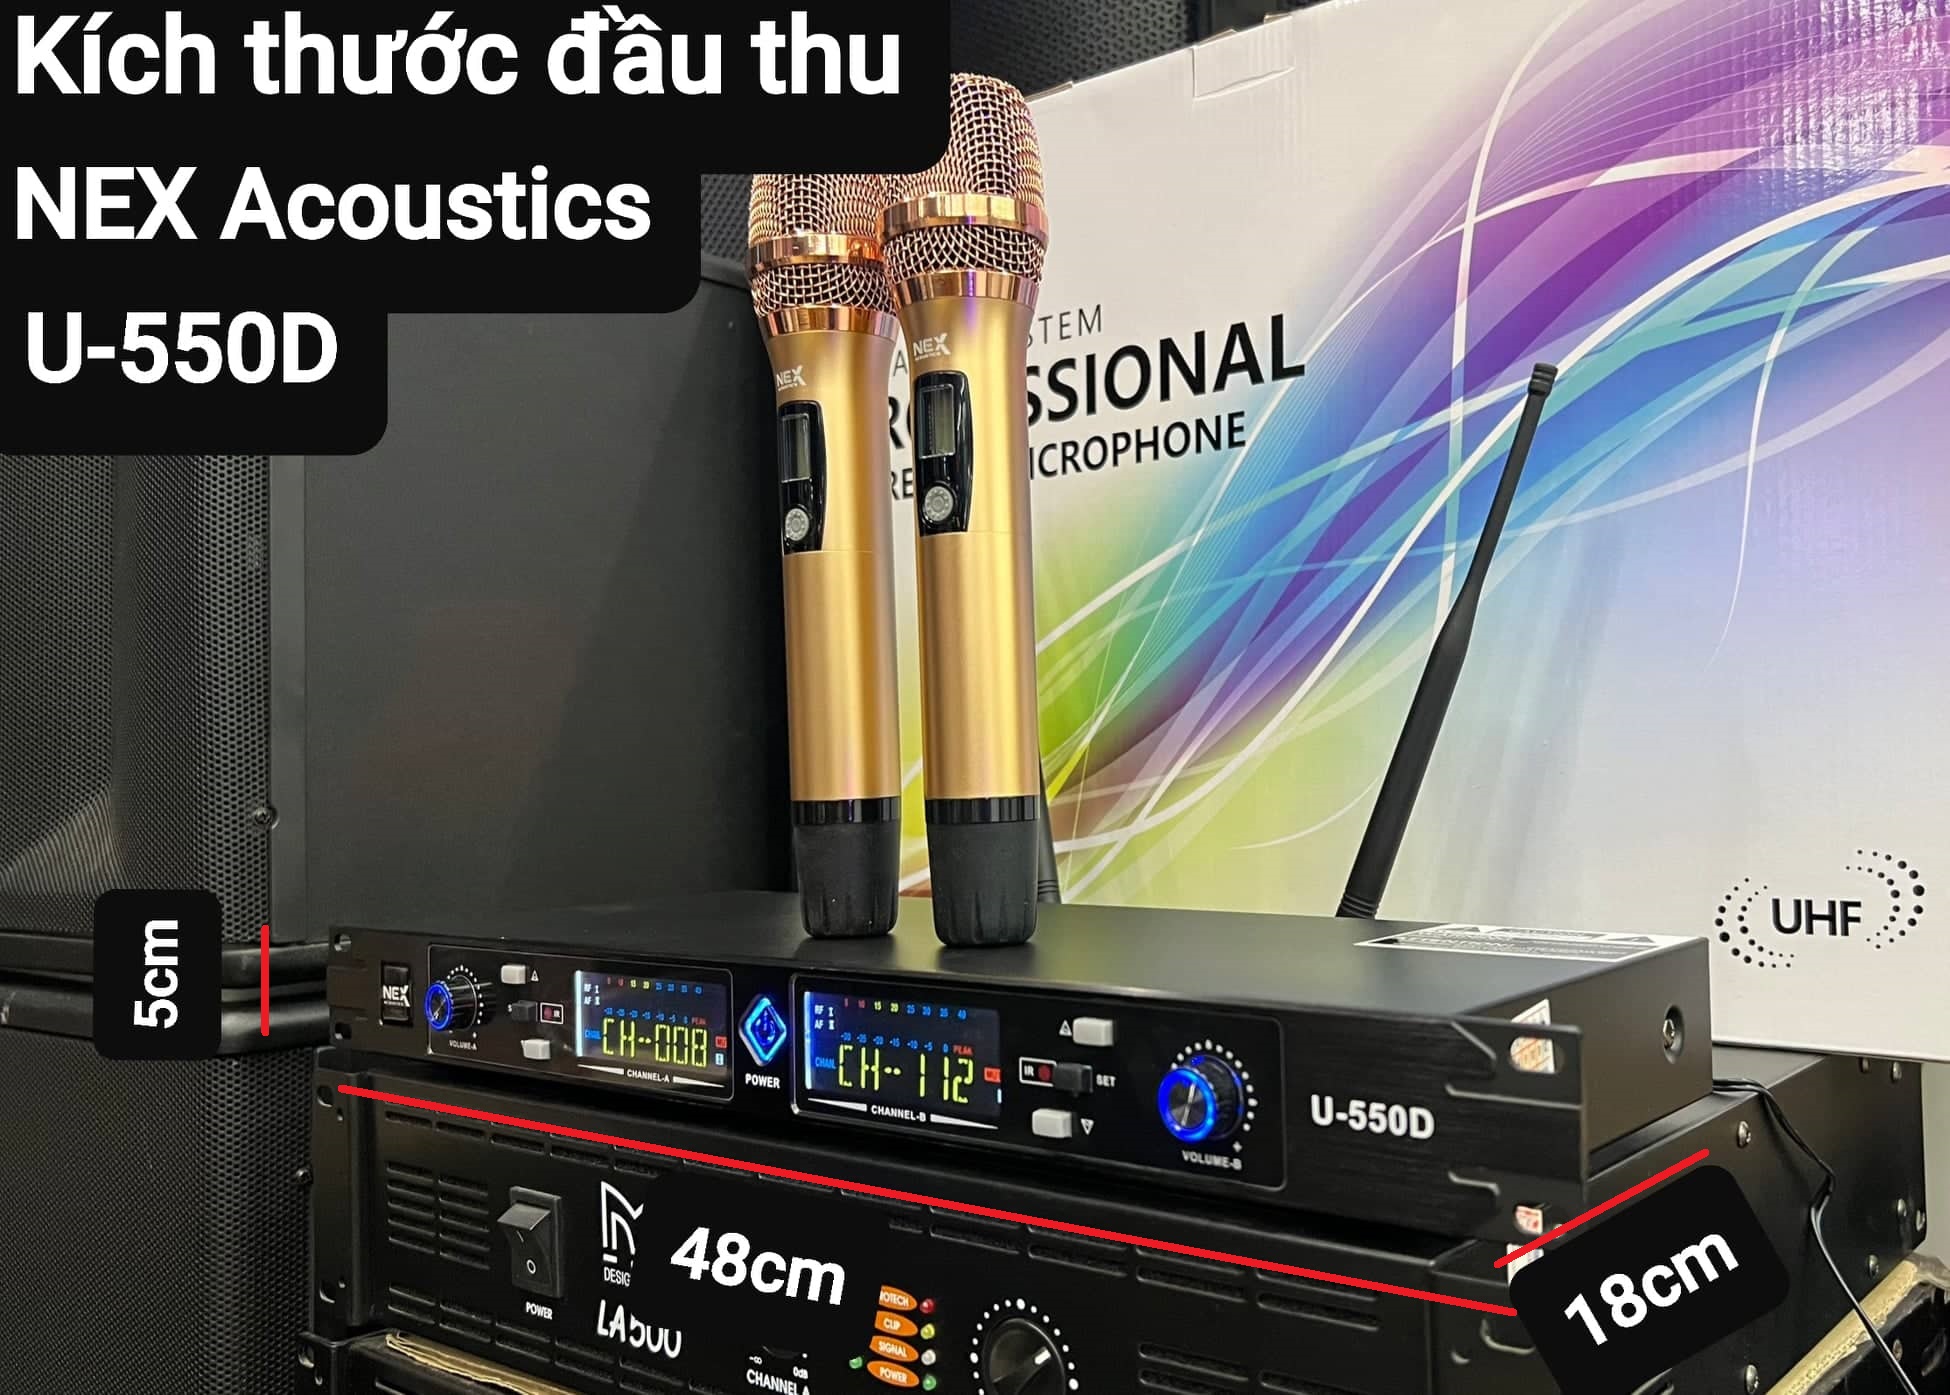 Bộ Micro không dây NEX Acoustics U-550D: Hàng đẹp, Thu âm tốt, Sáng tiếng. Chống hú/rít, tạp âm, 2 râu thu sóng, Vỉ tím